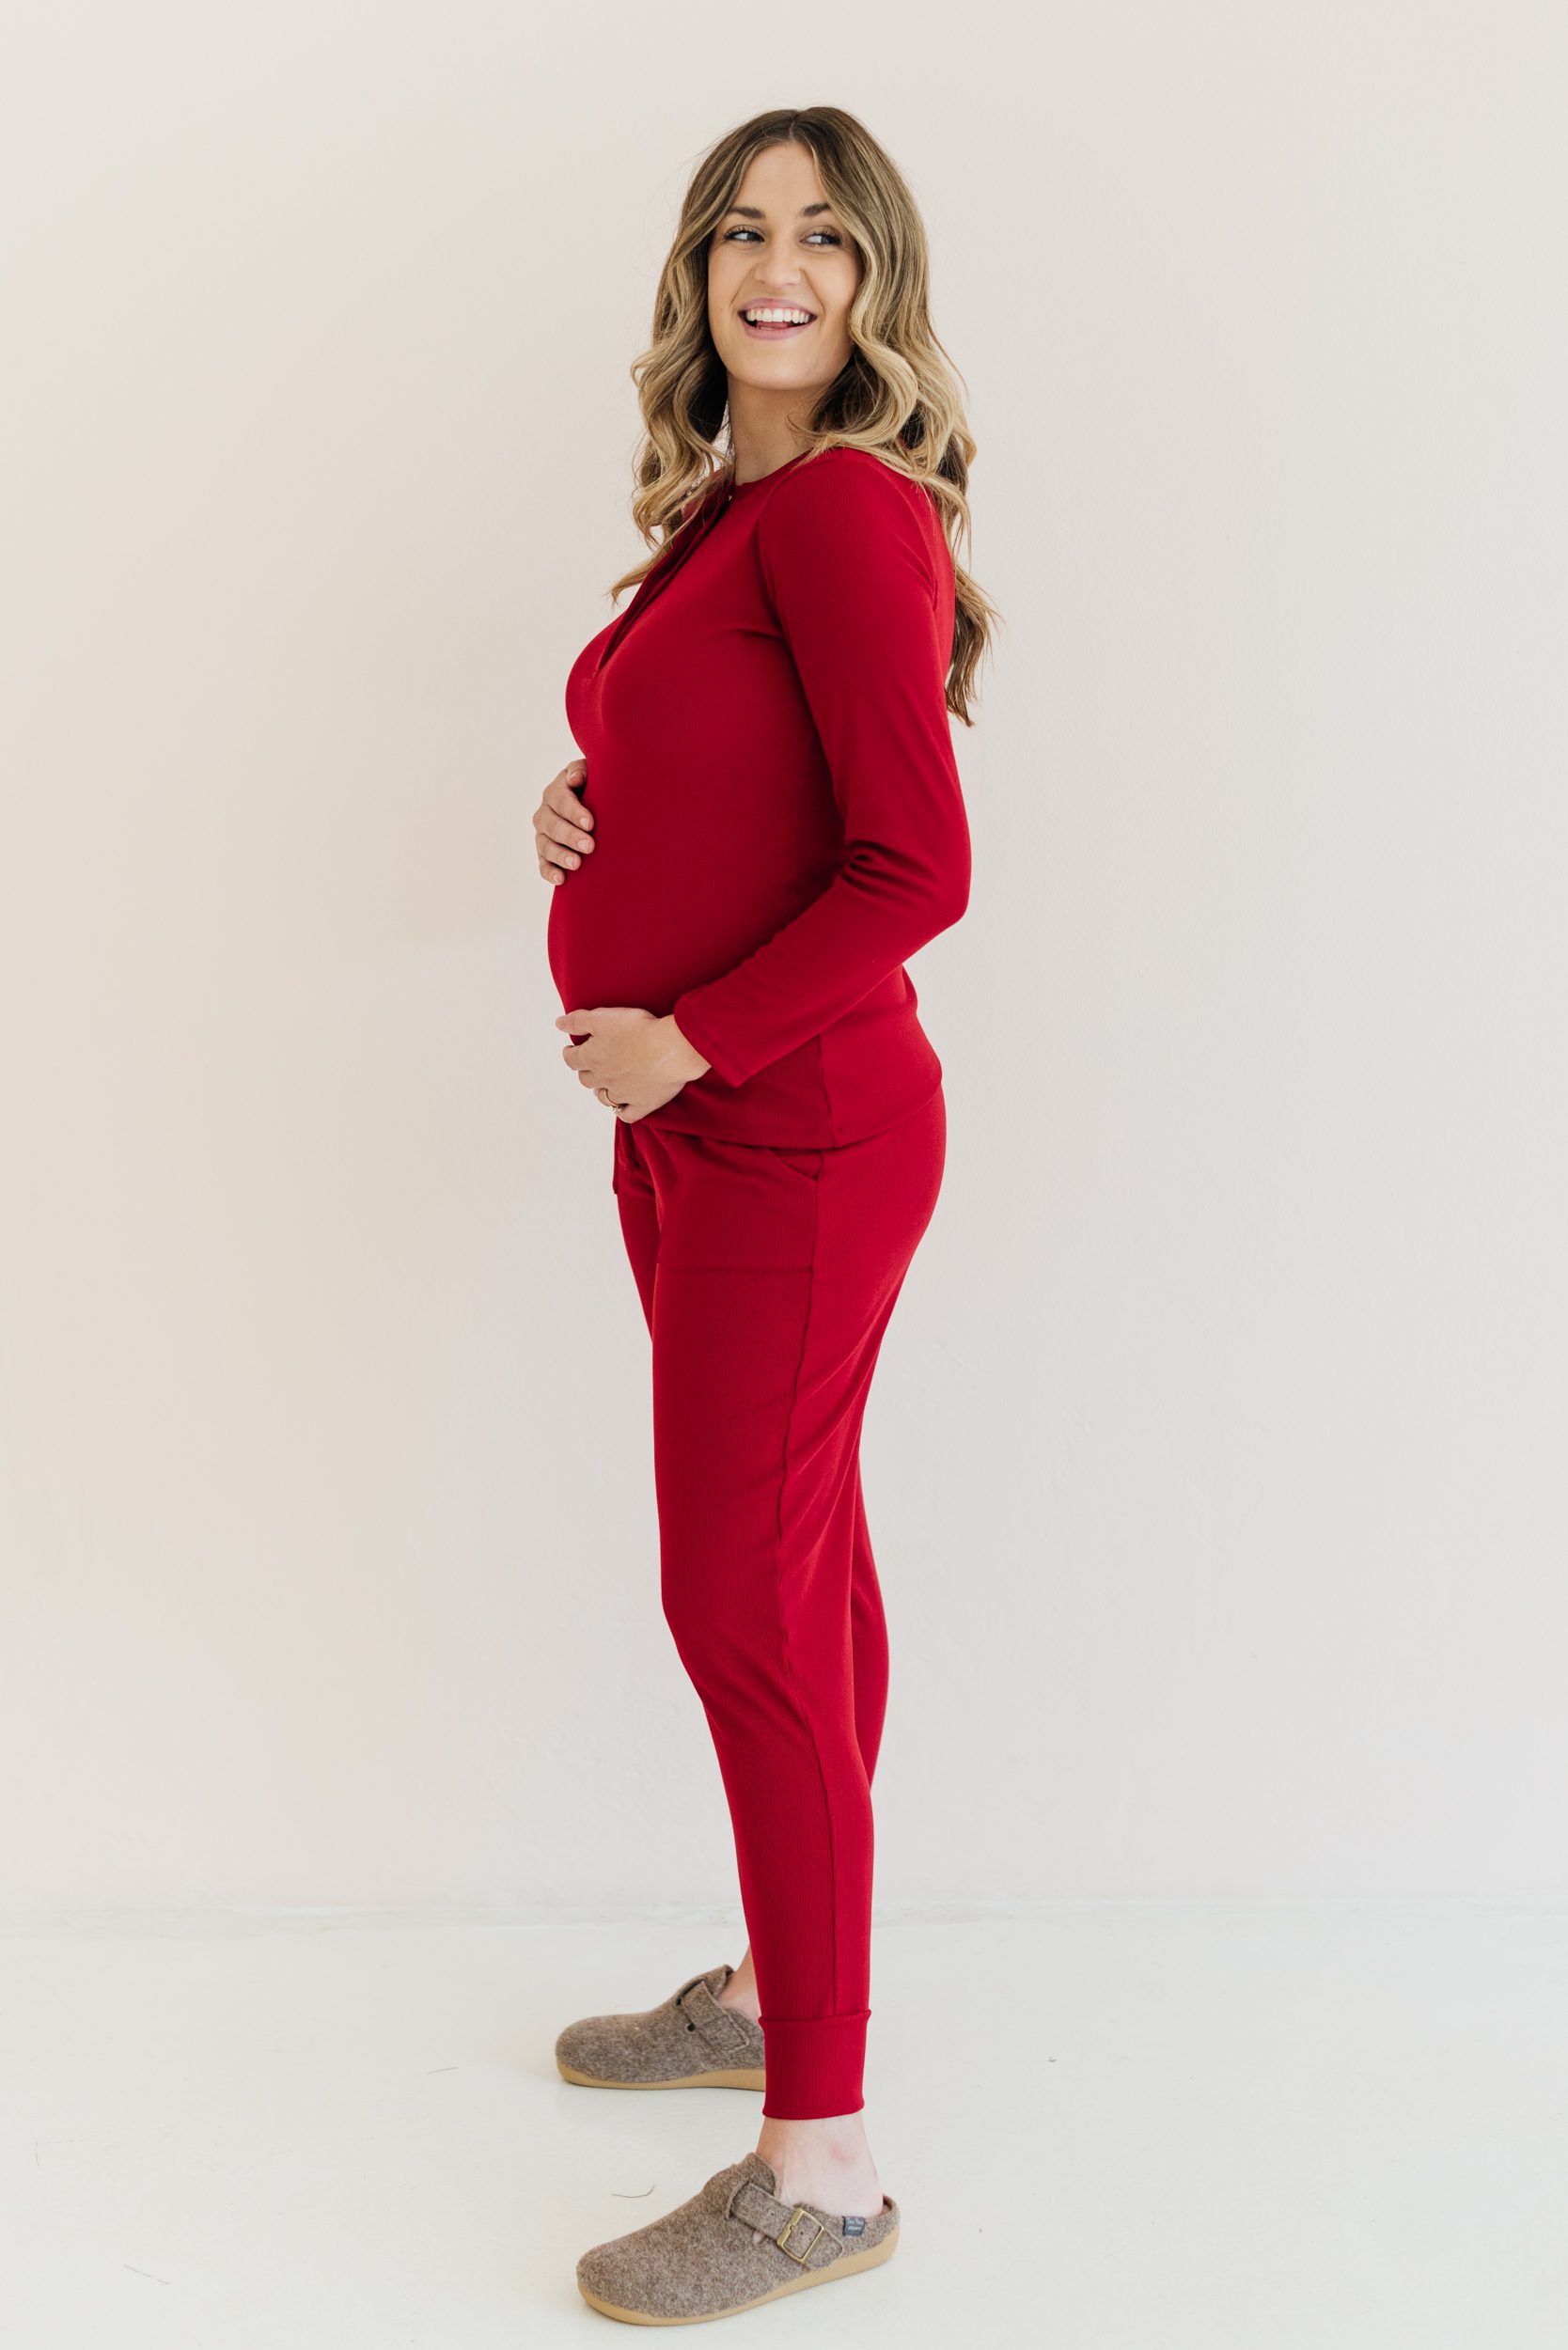 Buy Ribbed Cotton Joggers Maroon - Momsy Maternity, Nursing, & Womenswear